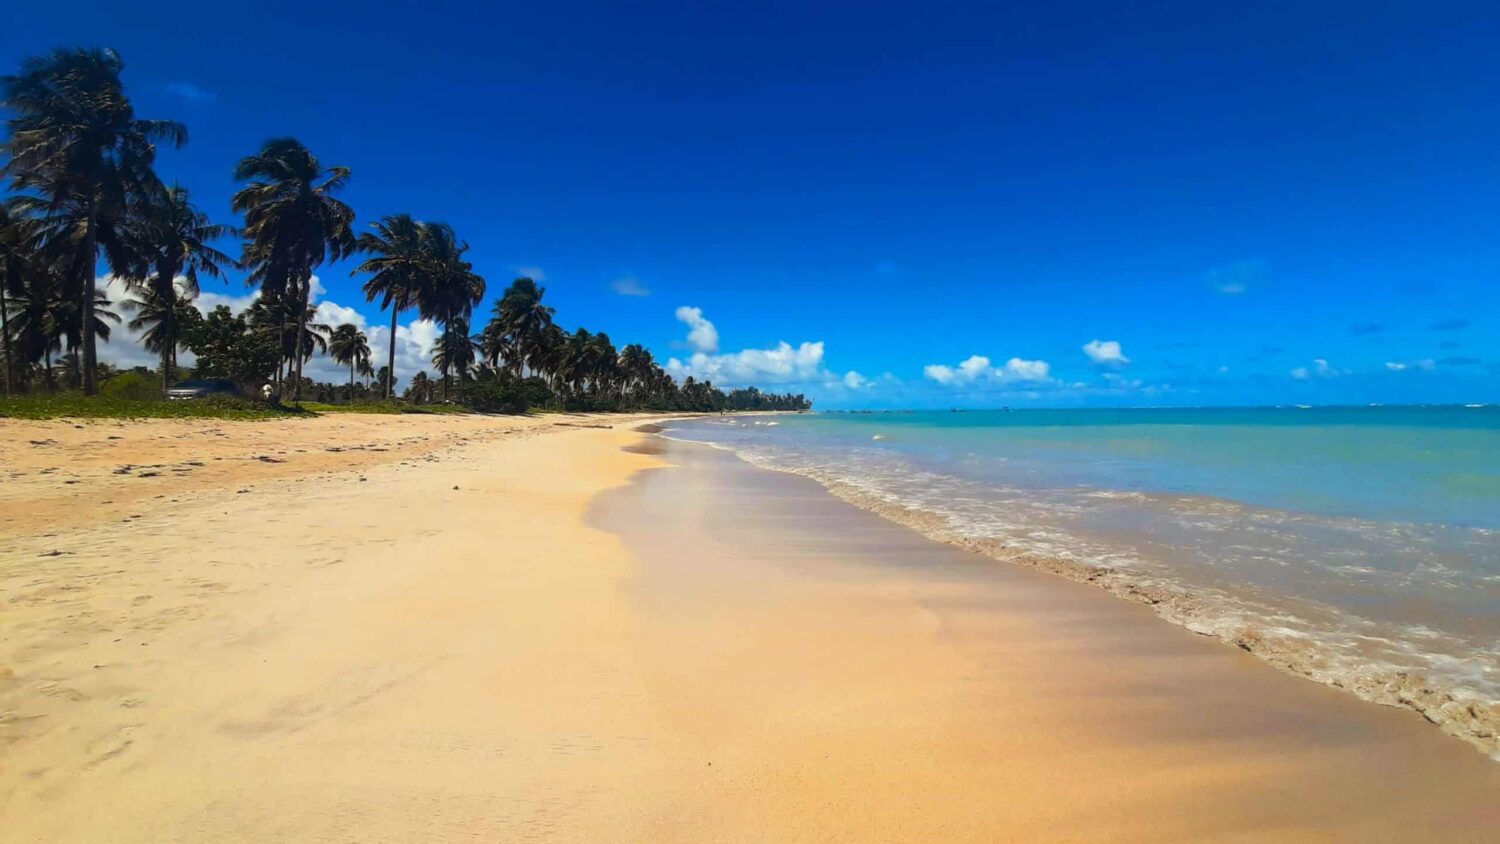 Praia de São Miguel dos Milagres, sendo do lado esquerdo o mar azul com poucas ondas, no meio um banco de areia branco e à direita tem coqueiros balançando com o vento